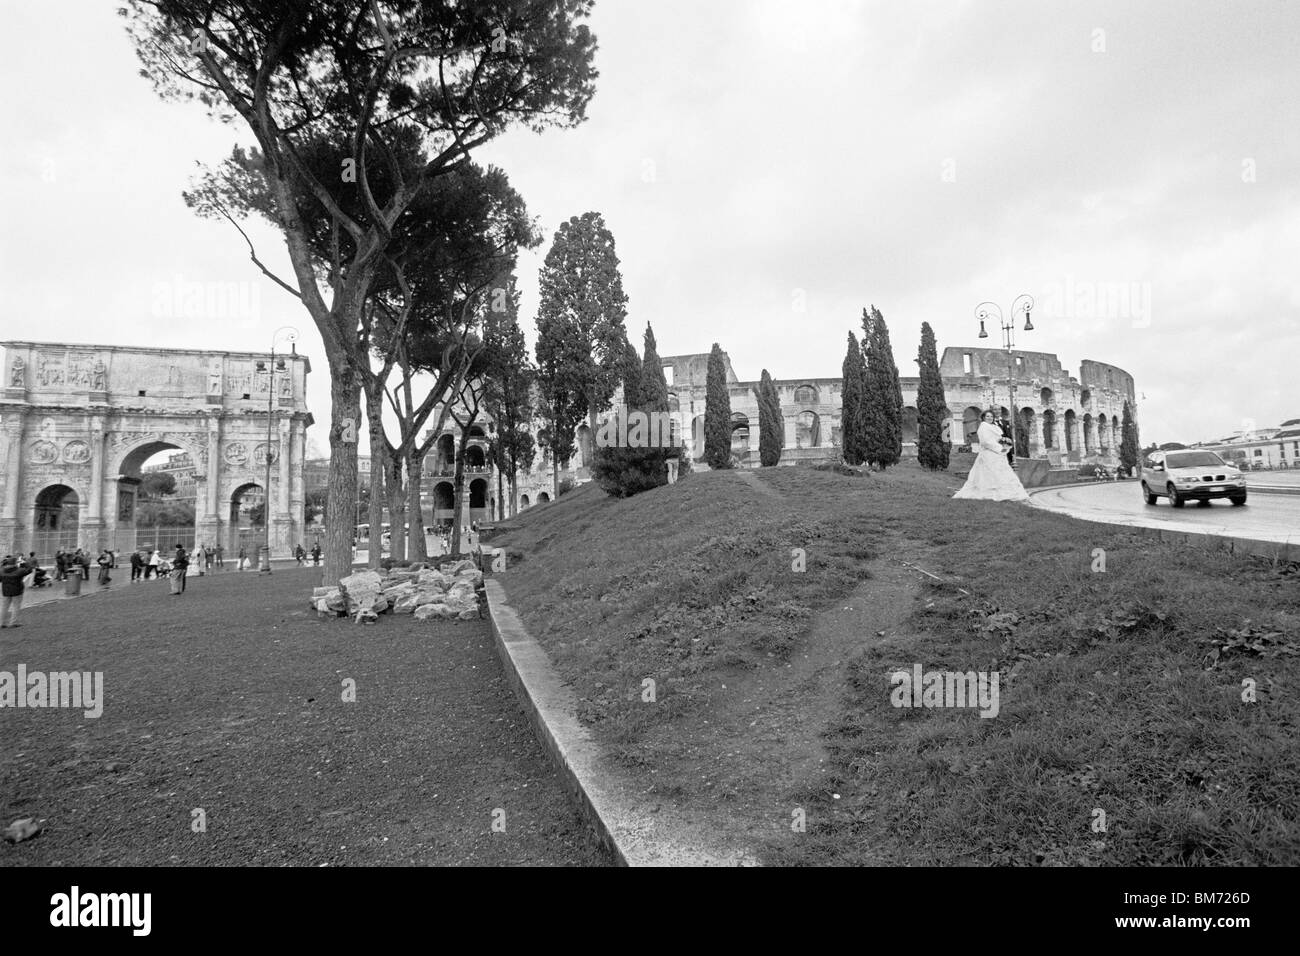 Rome, Italie, 30 janvier 2010 -- Arc de Constantin (à gauche) et le Colisée (à droite), capturés en noir et blanc. Banque D'Images